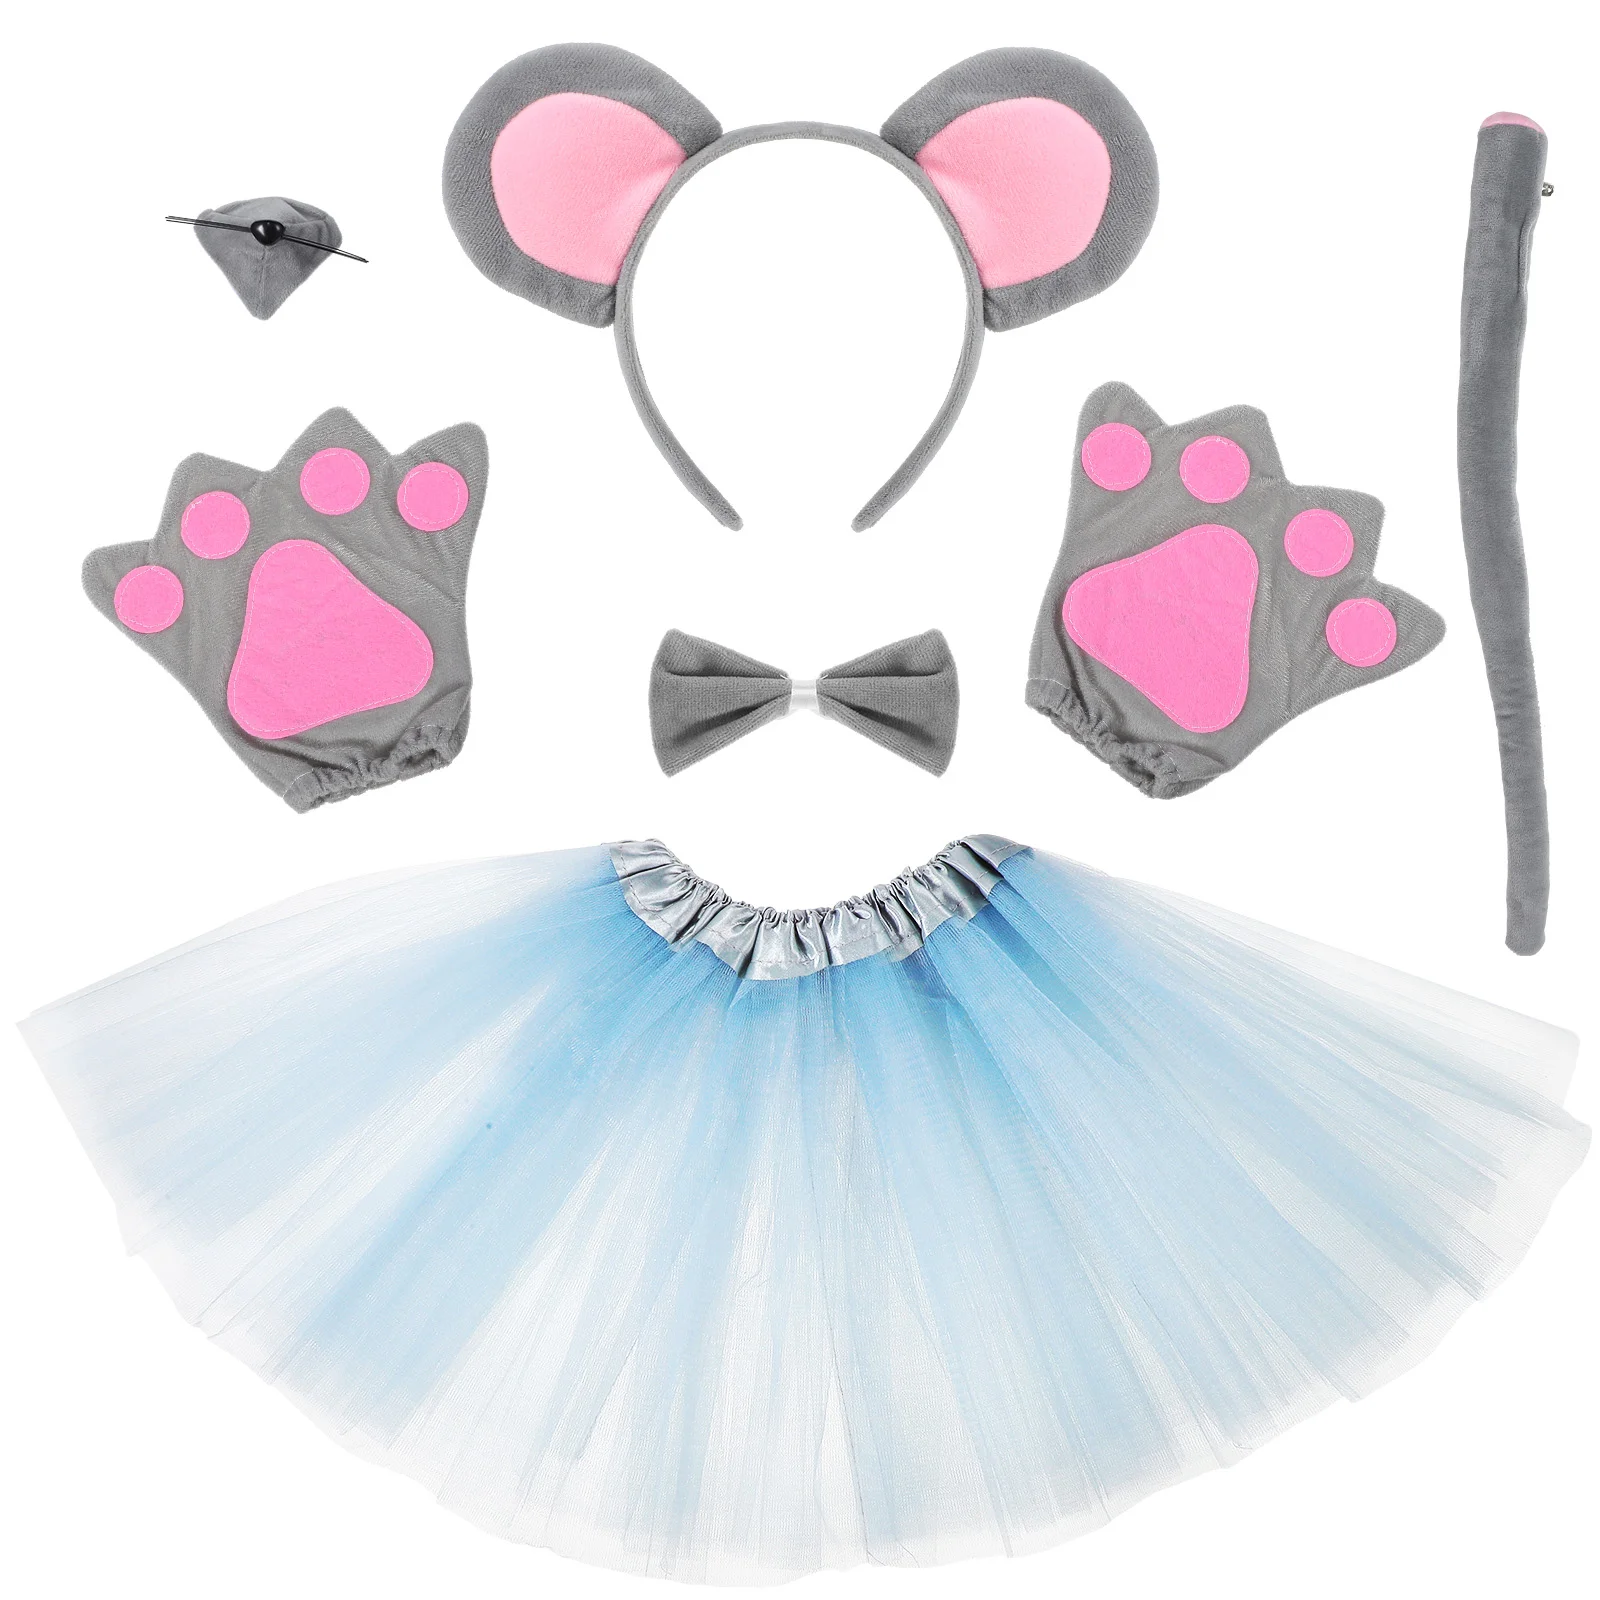 

Набор аксессуаров для костюма мыши, 1 комплект, повязка на голову с ушками мыши, галстук-бабочка, юбка, перчатки, Хэллоуин